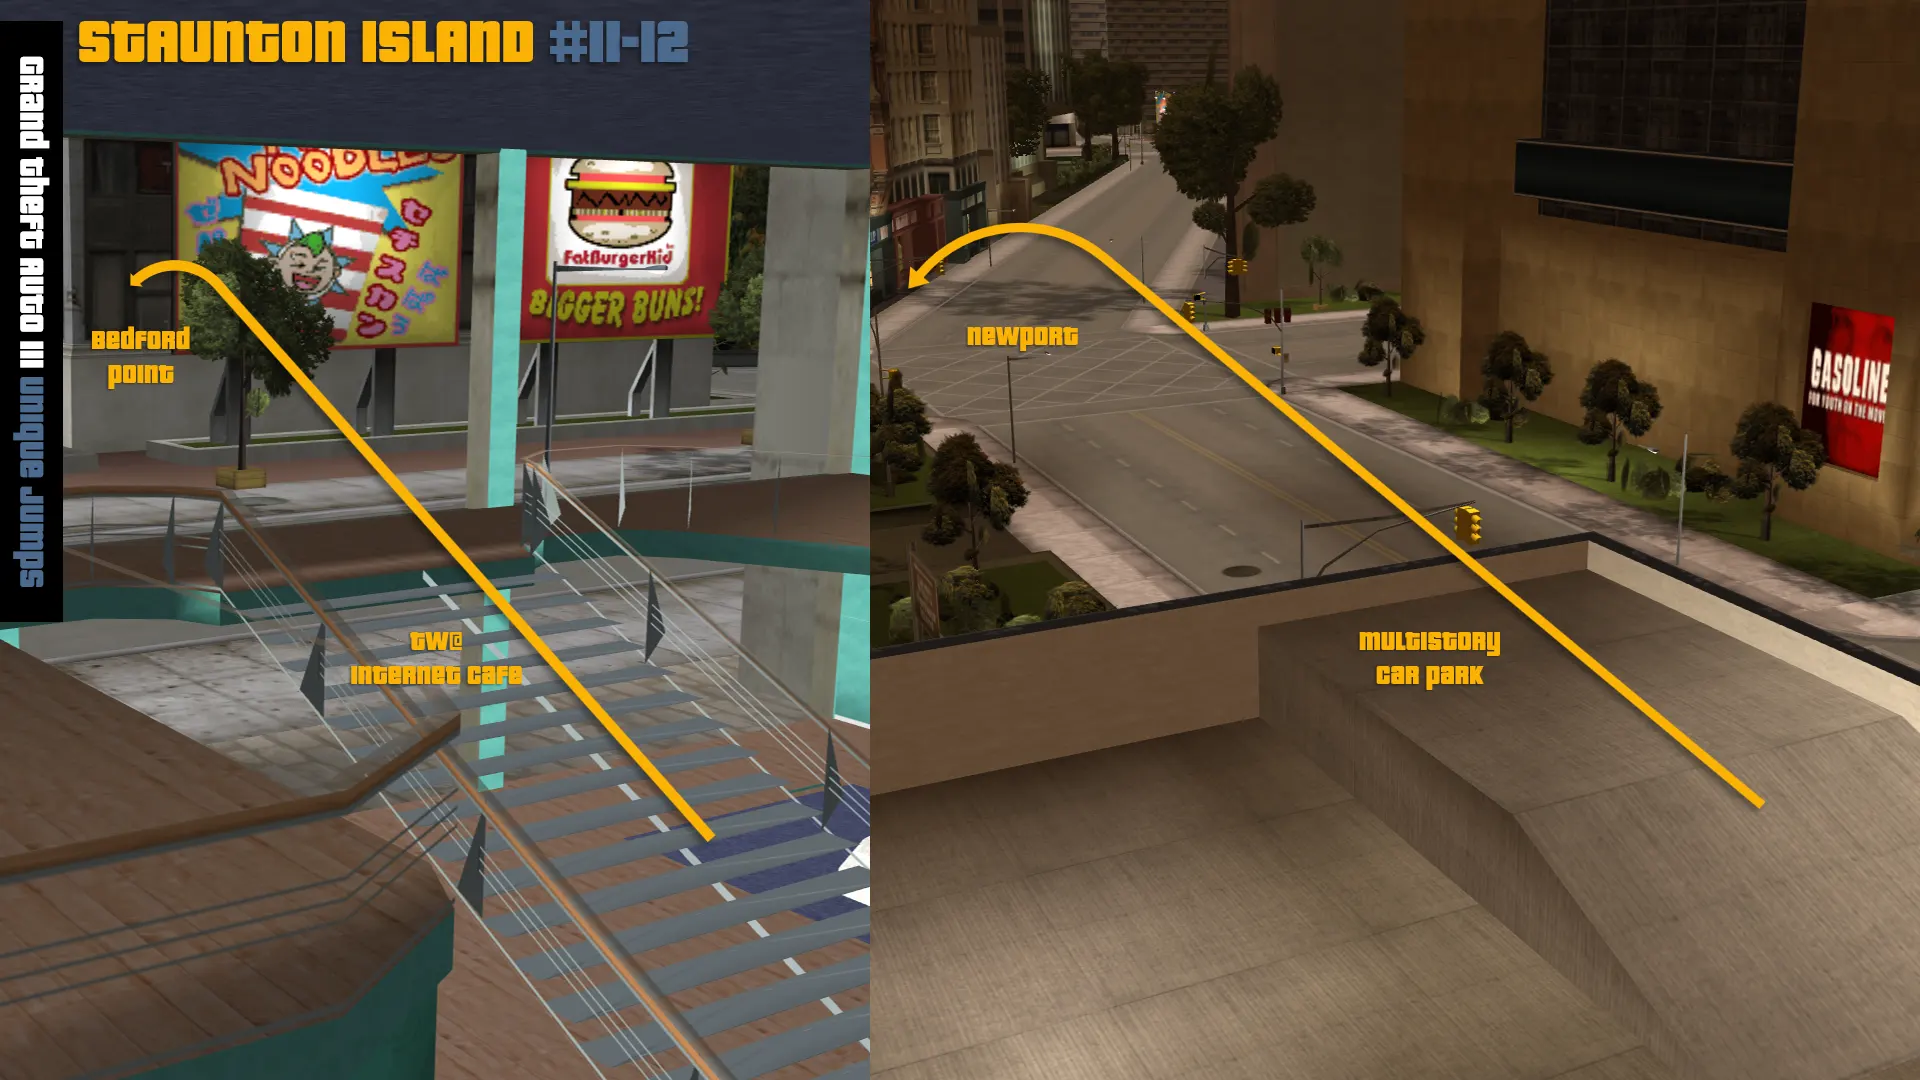 Grand Theft Auto III Stunt Jumps - Staunton Island 1 map.